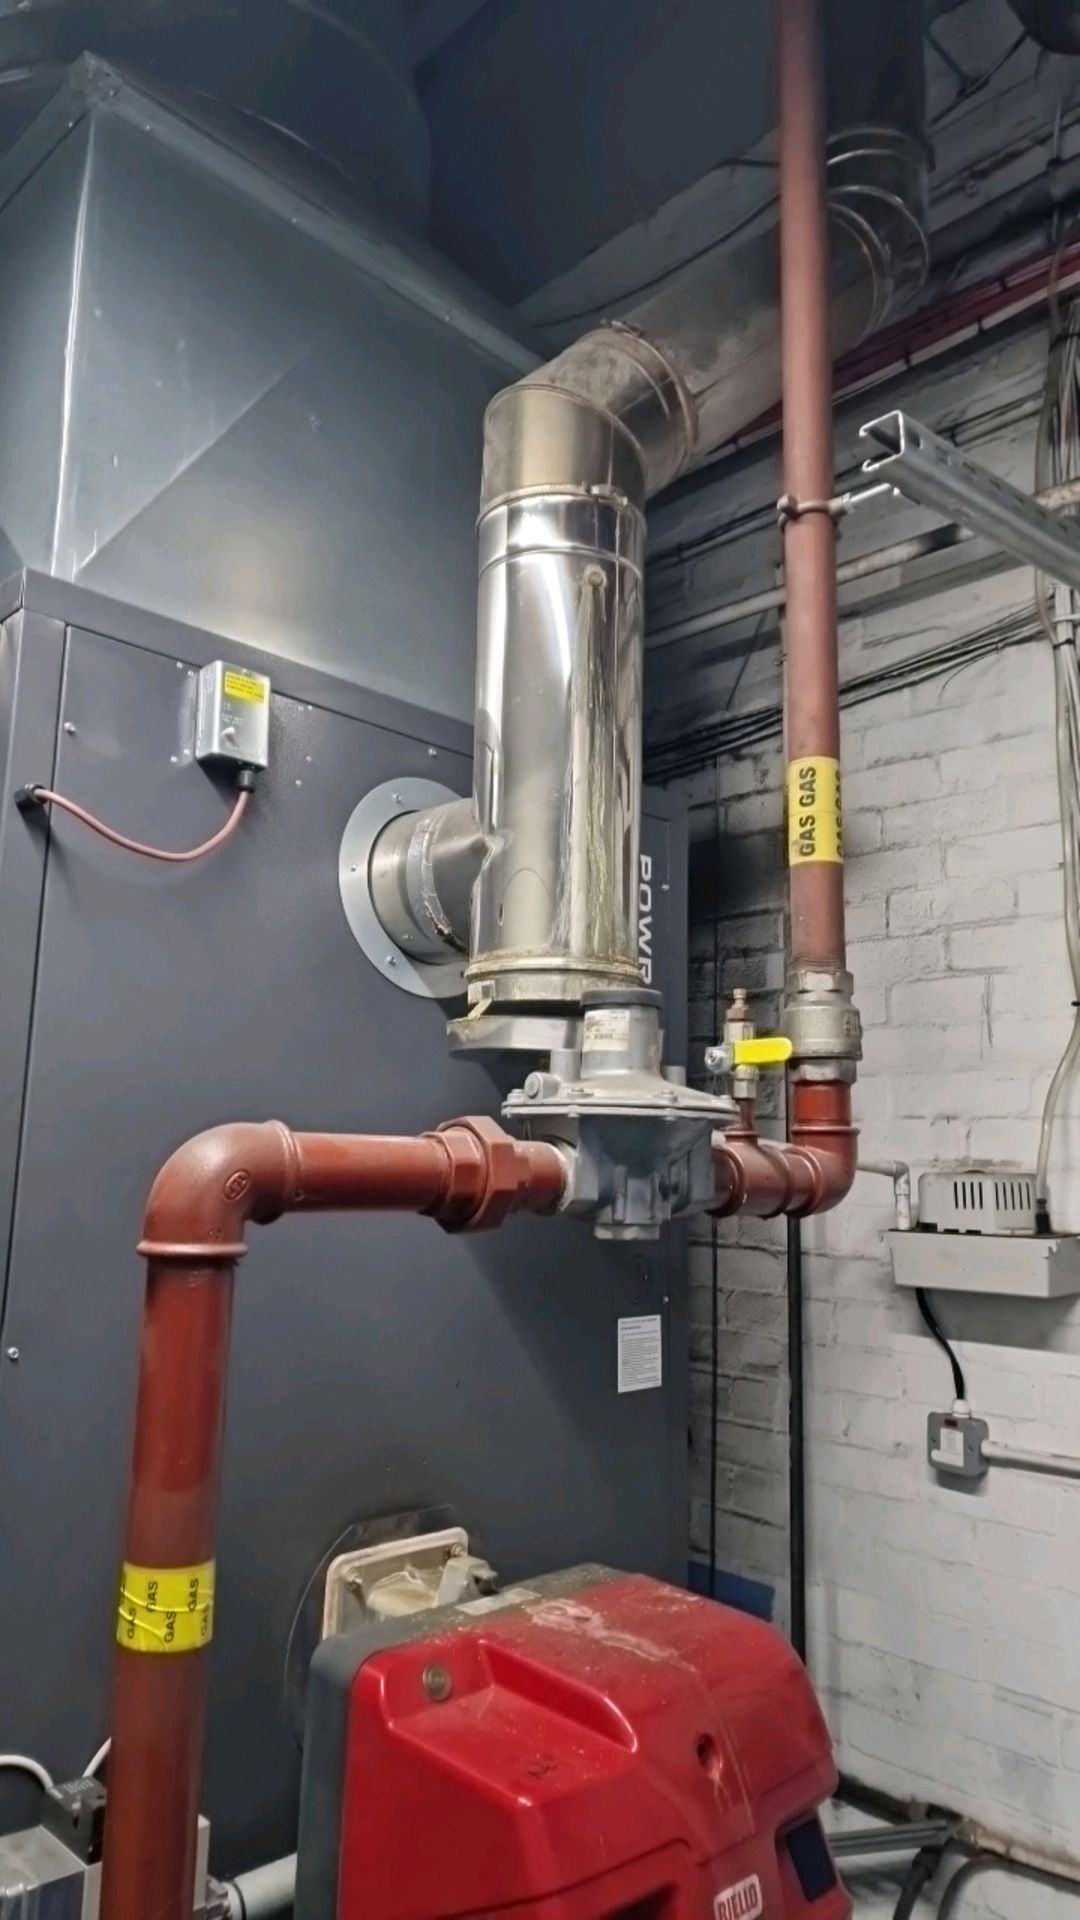 Powrmatic Industrial Heating Unit - Bild 7 aus 8